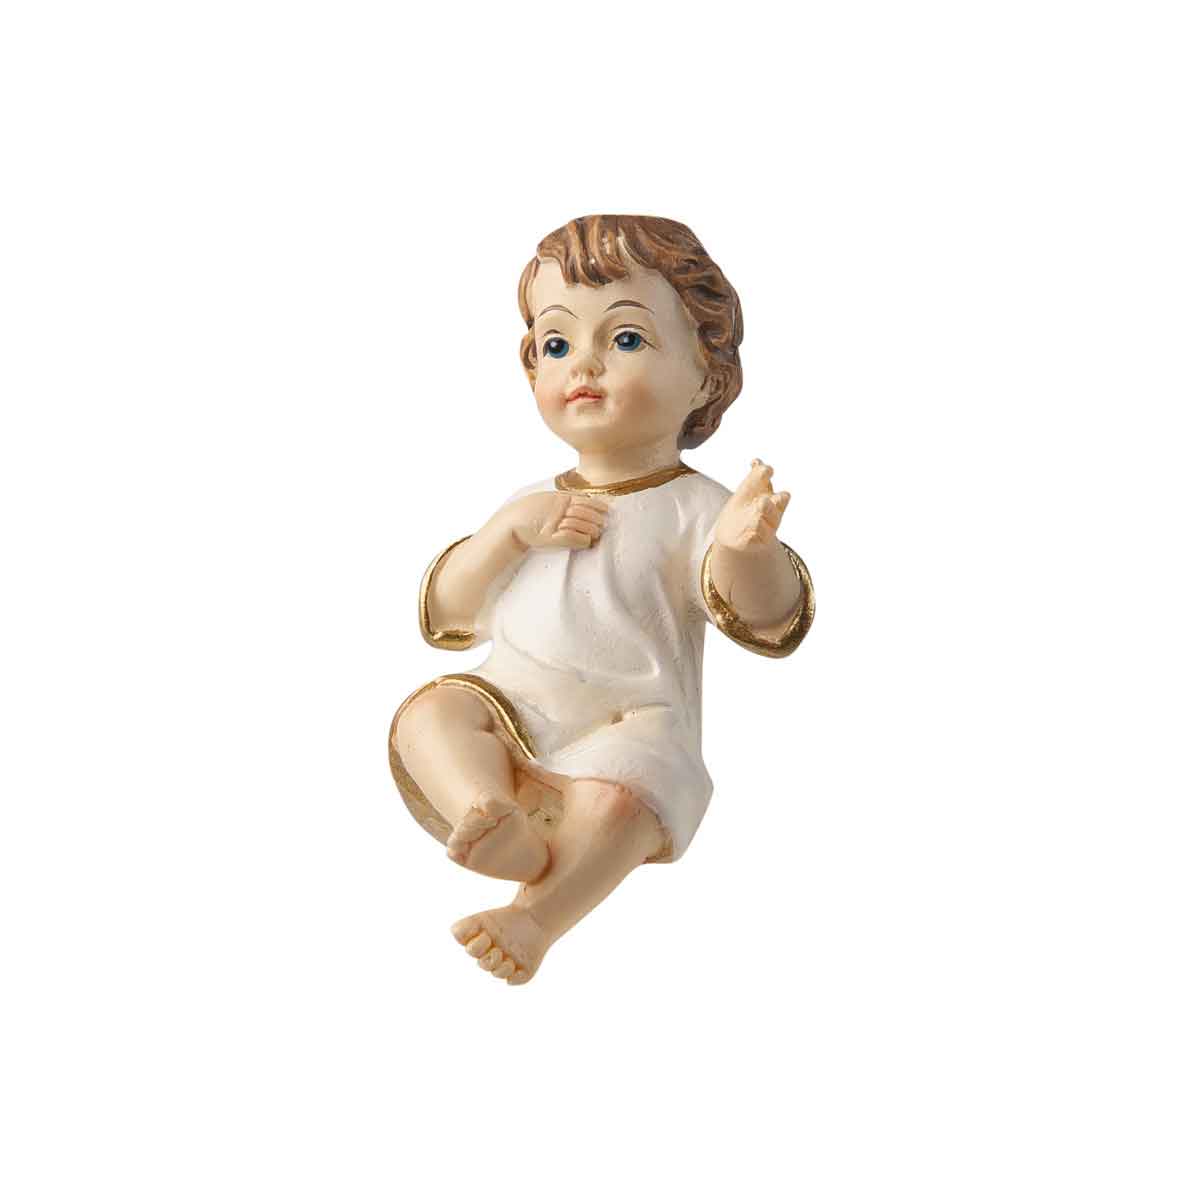 Presepe – Statuetta Gesù Bambino con veste bianca